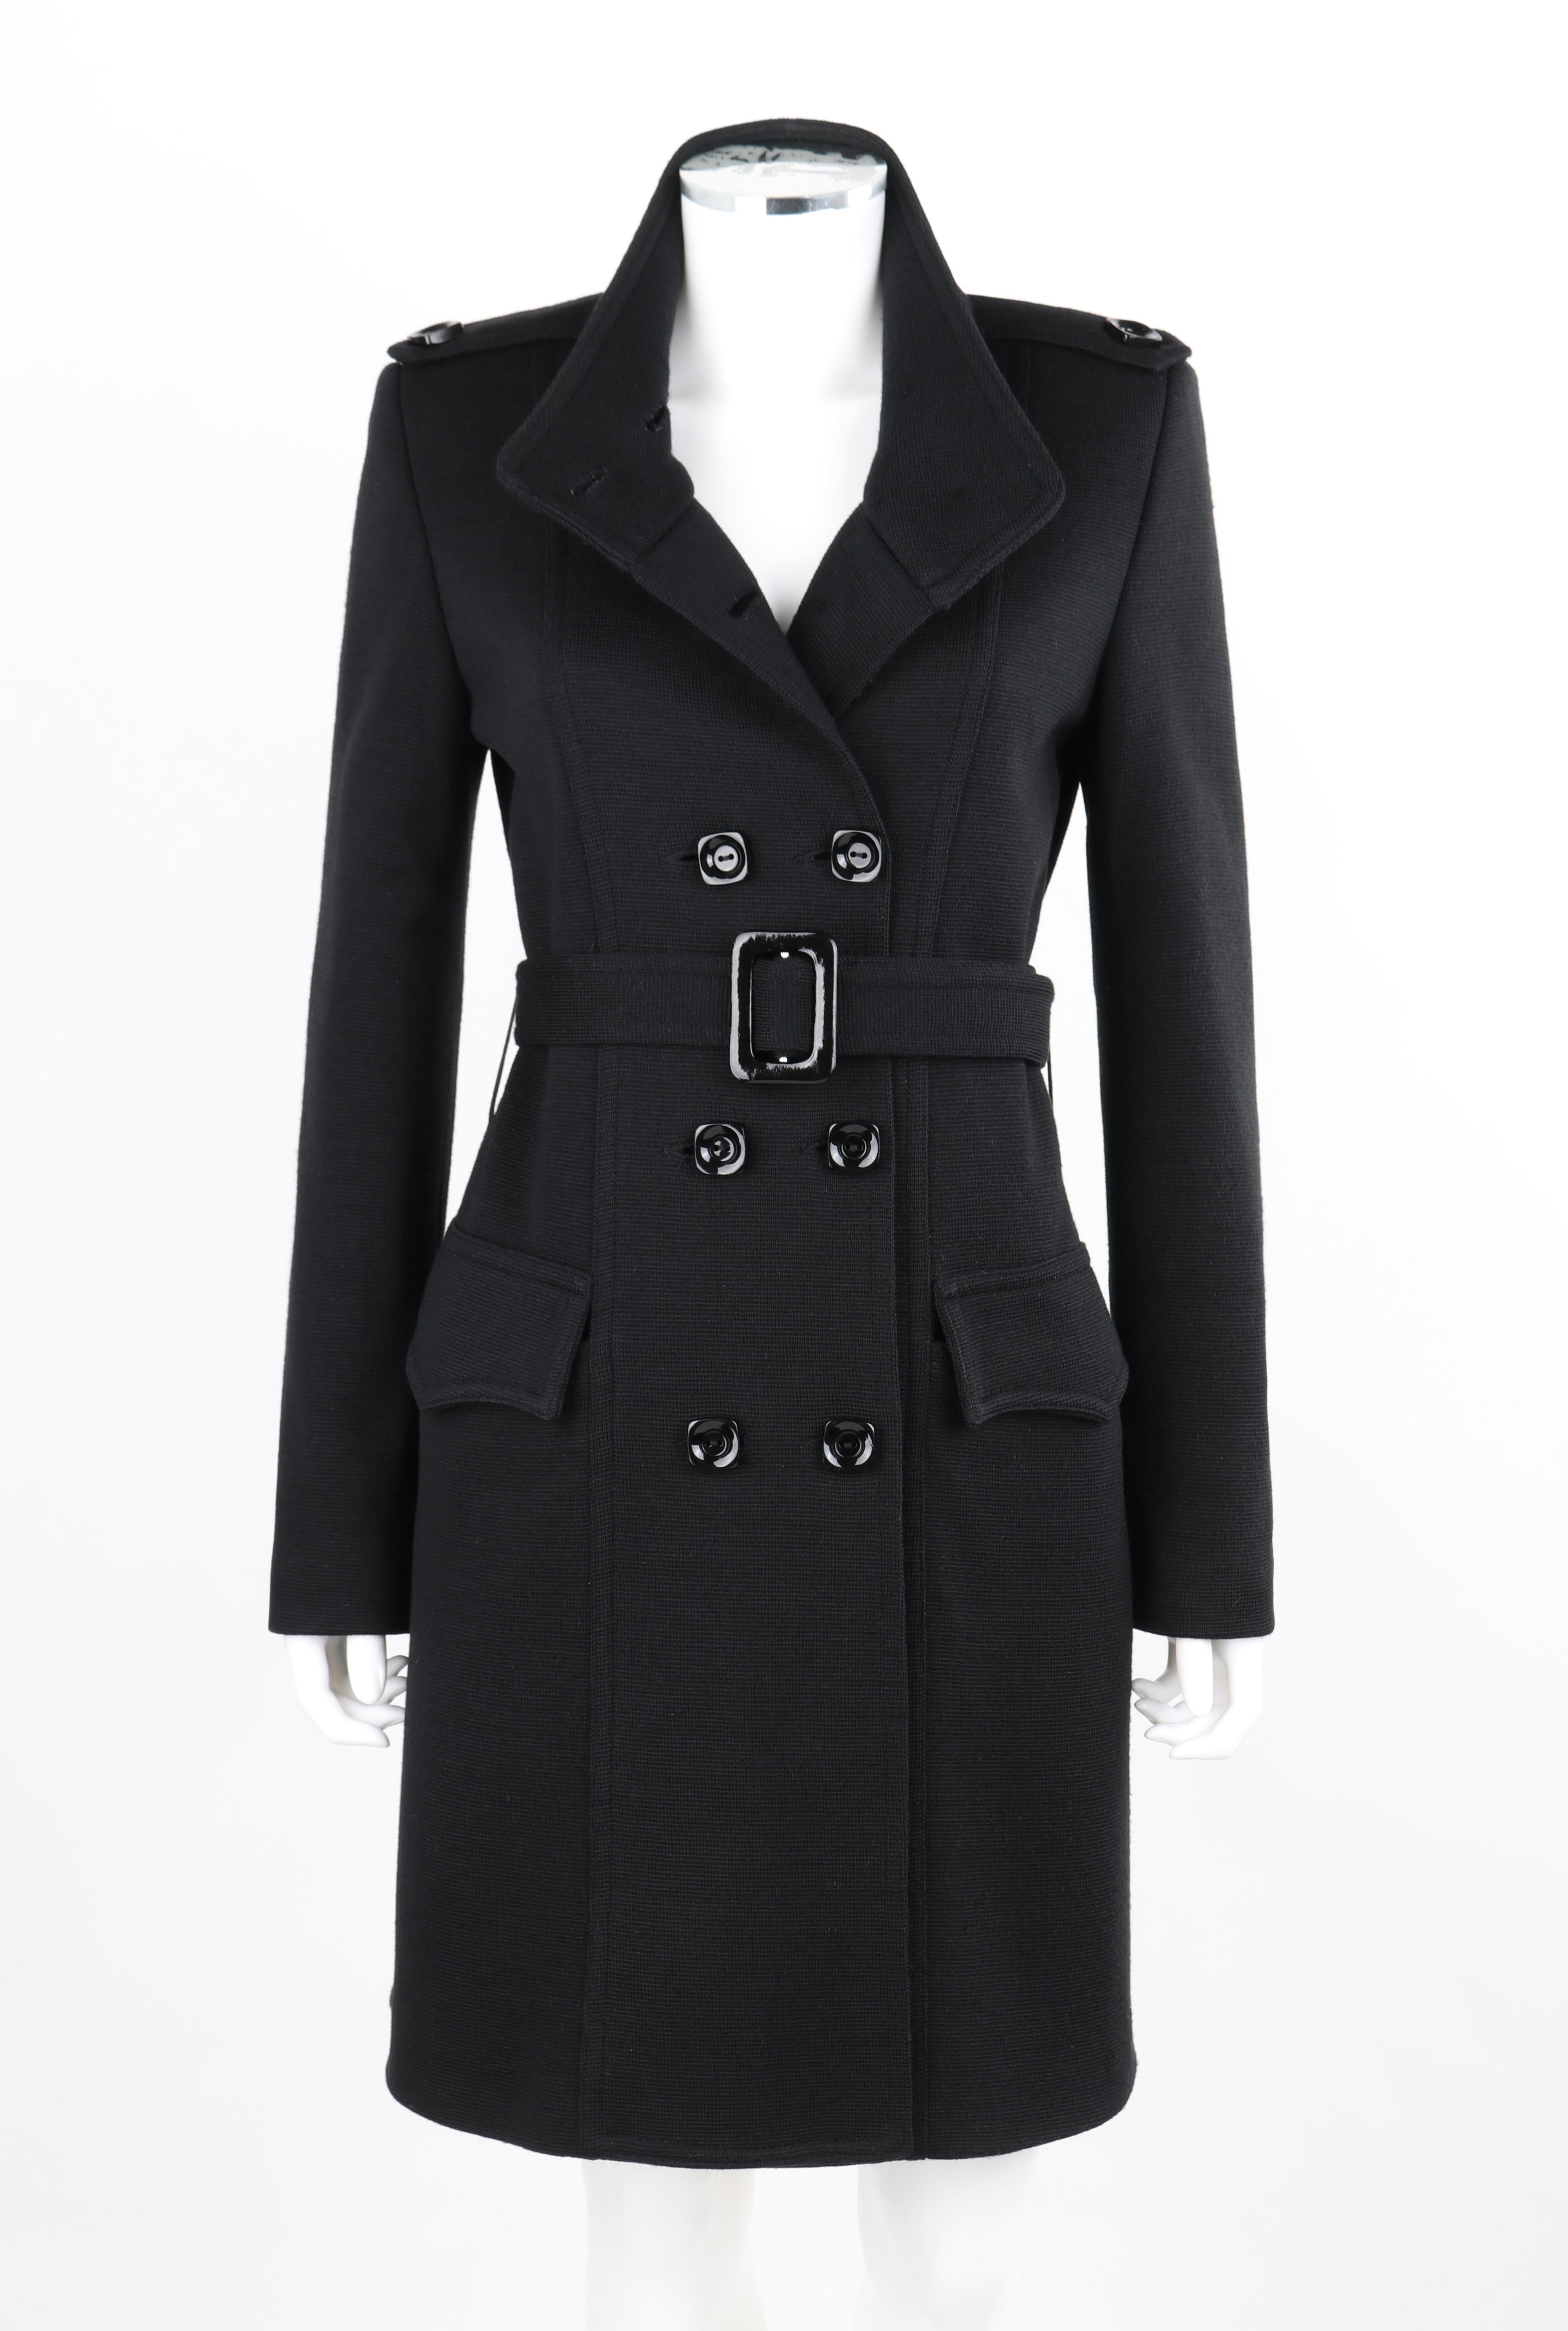 structured black coat